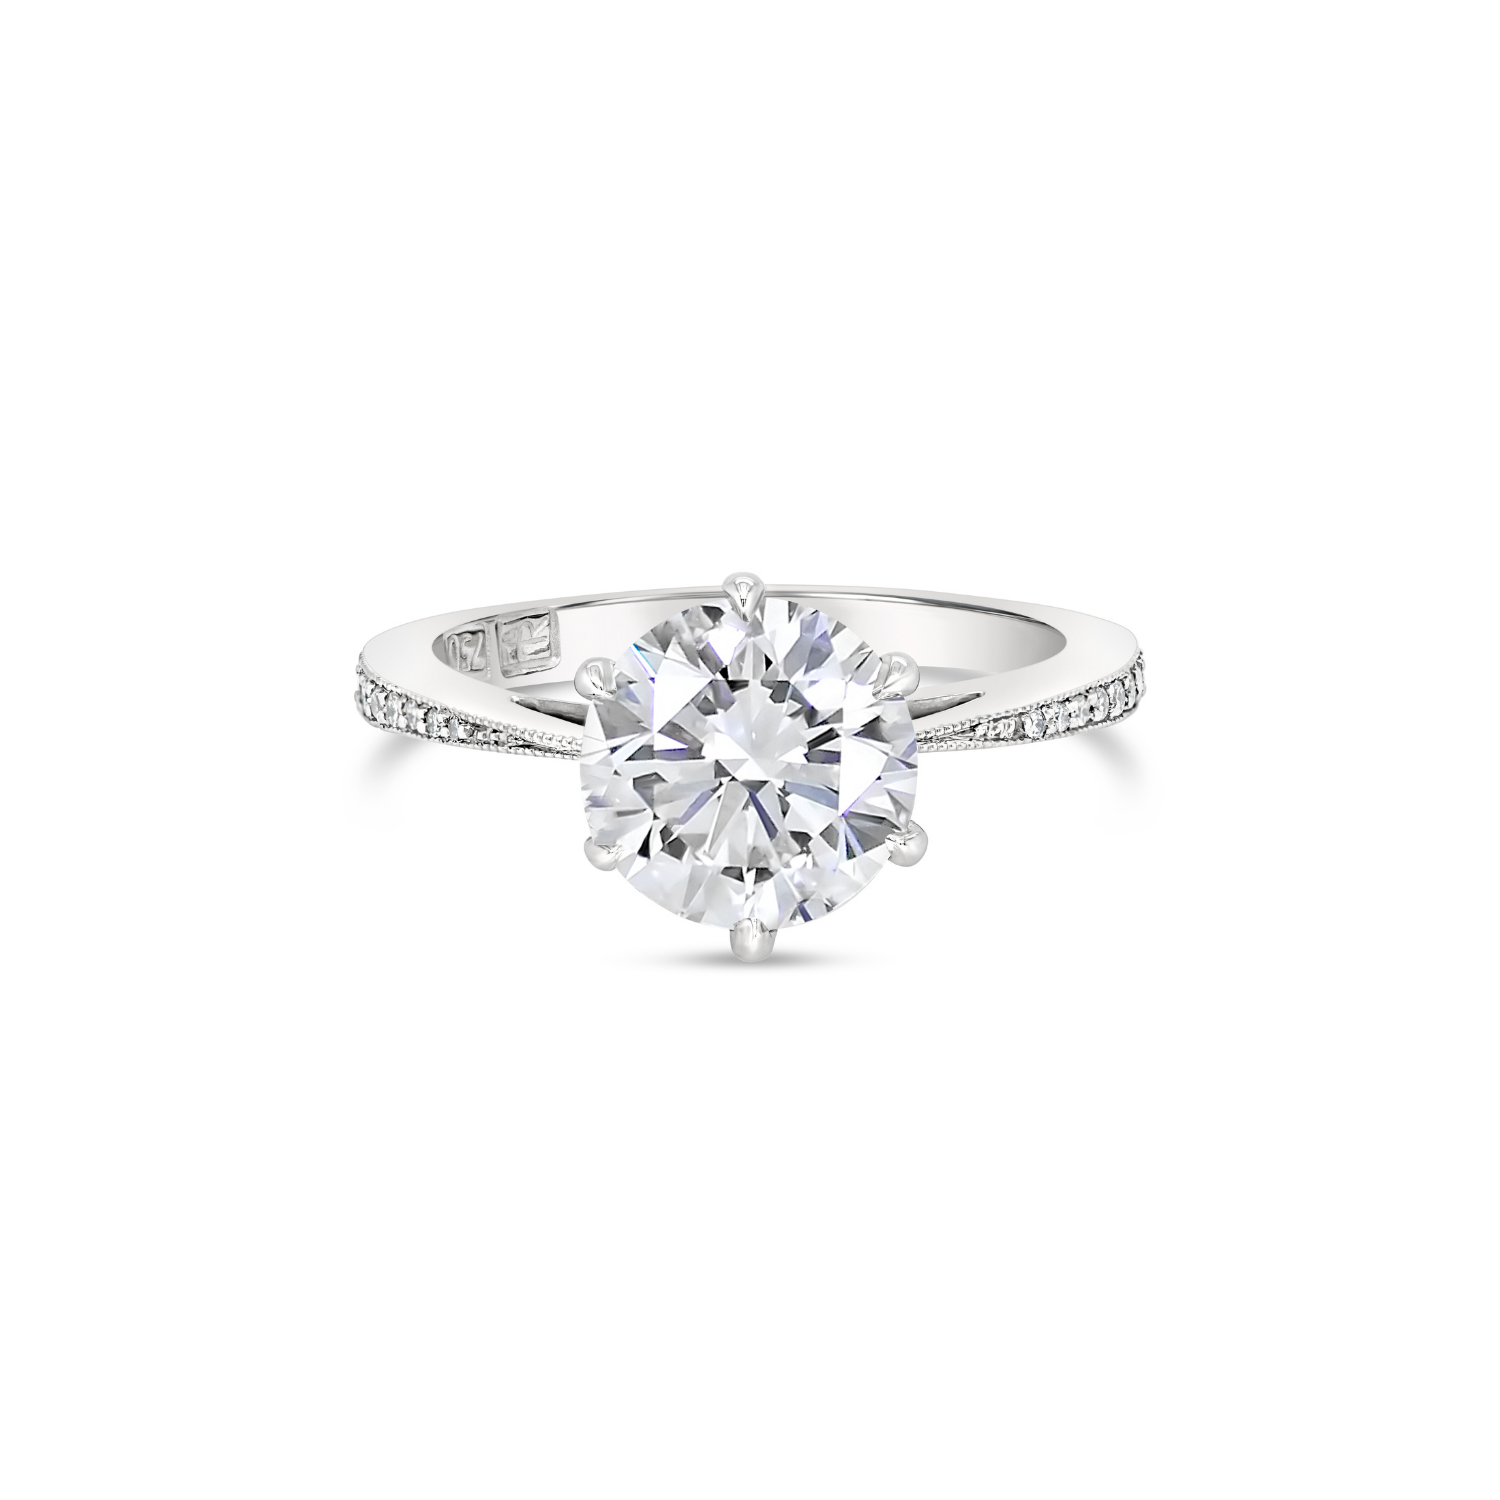 Round Brilliant Cut Solitaire Diamond & Milgrain Engagement RingRound Brilliant Cut Solitaire Diamond & Milgrain Engagement Ring